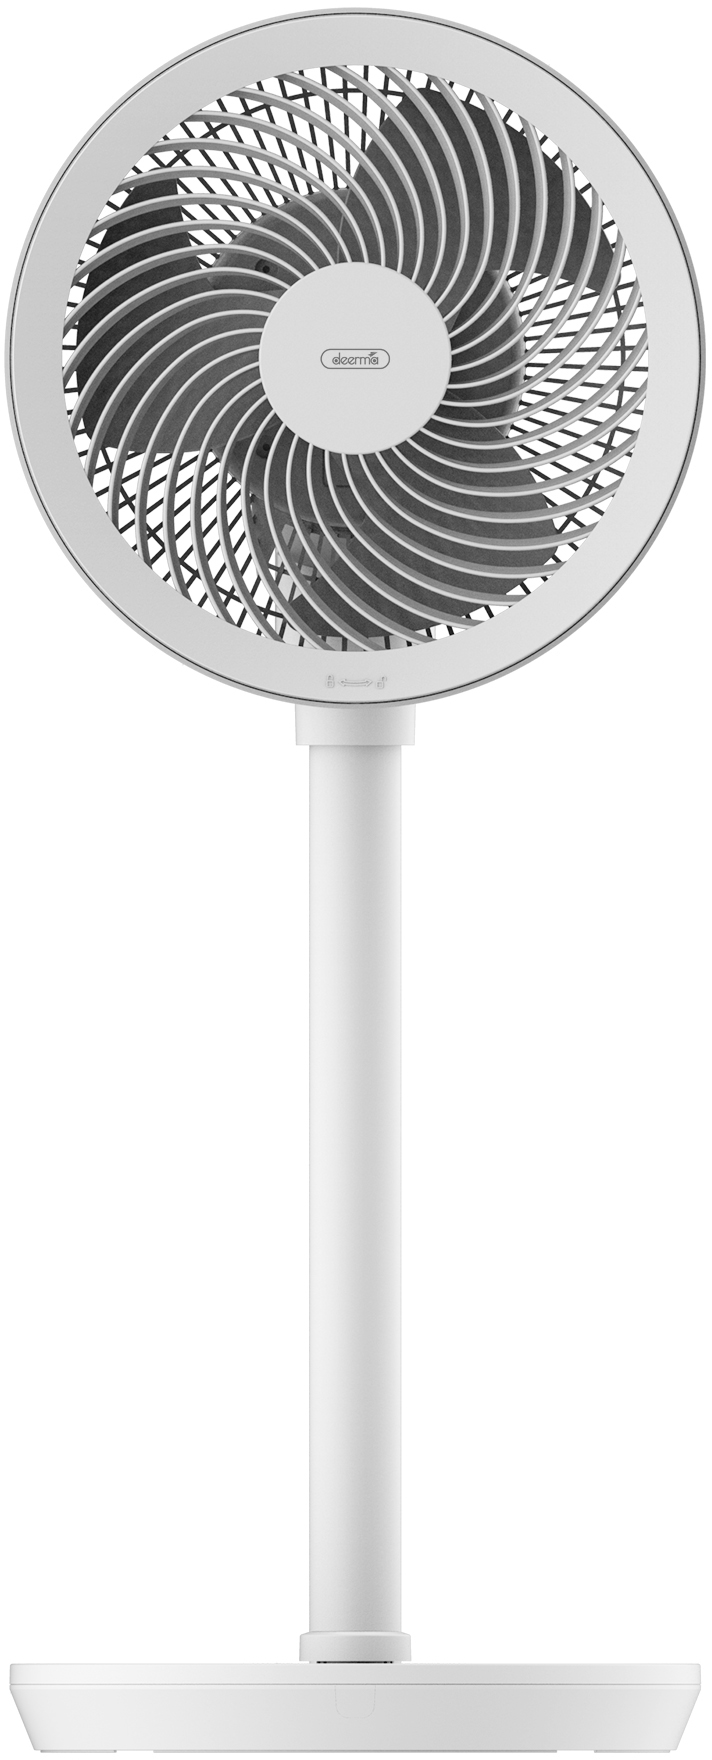 Вентилятор напольный; настольный Deerma FD200 белый вентилятор напольный настольный xiaomi quality zero silent storage fan белый